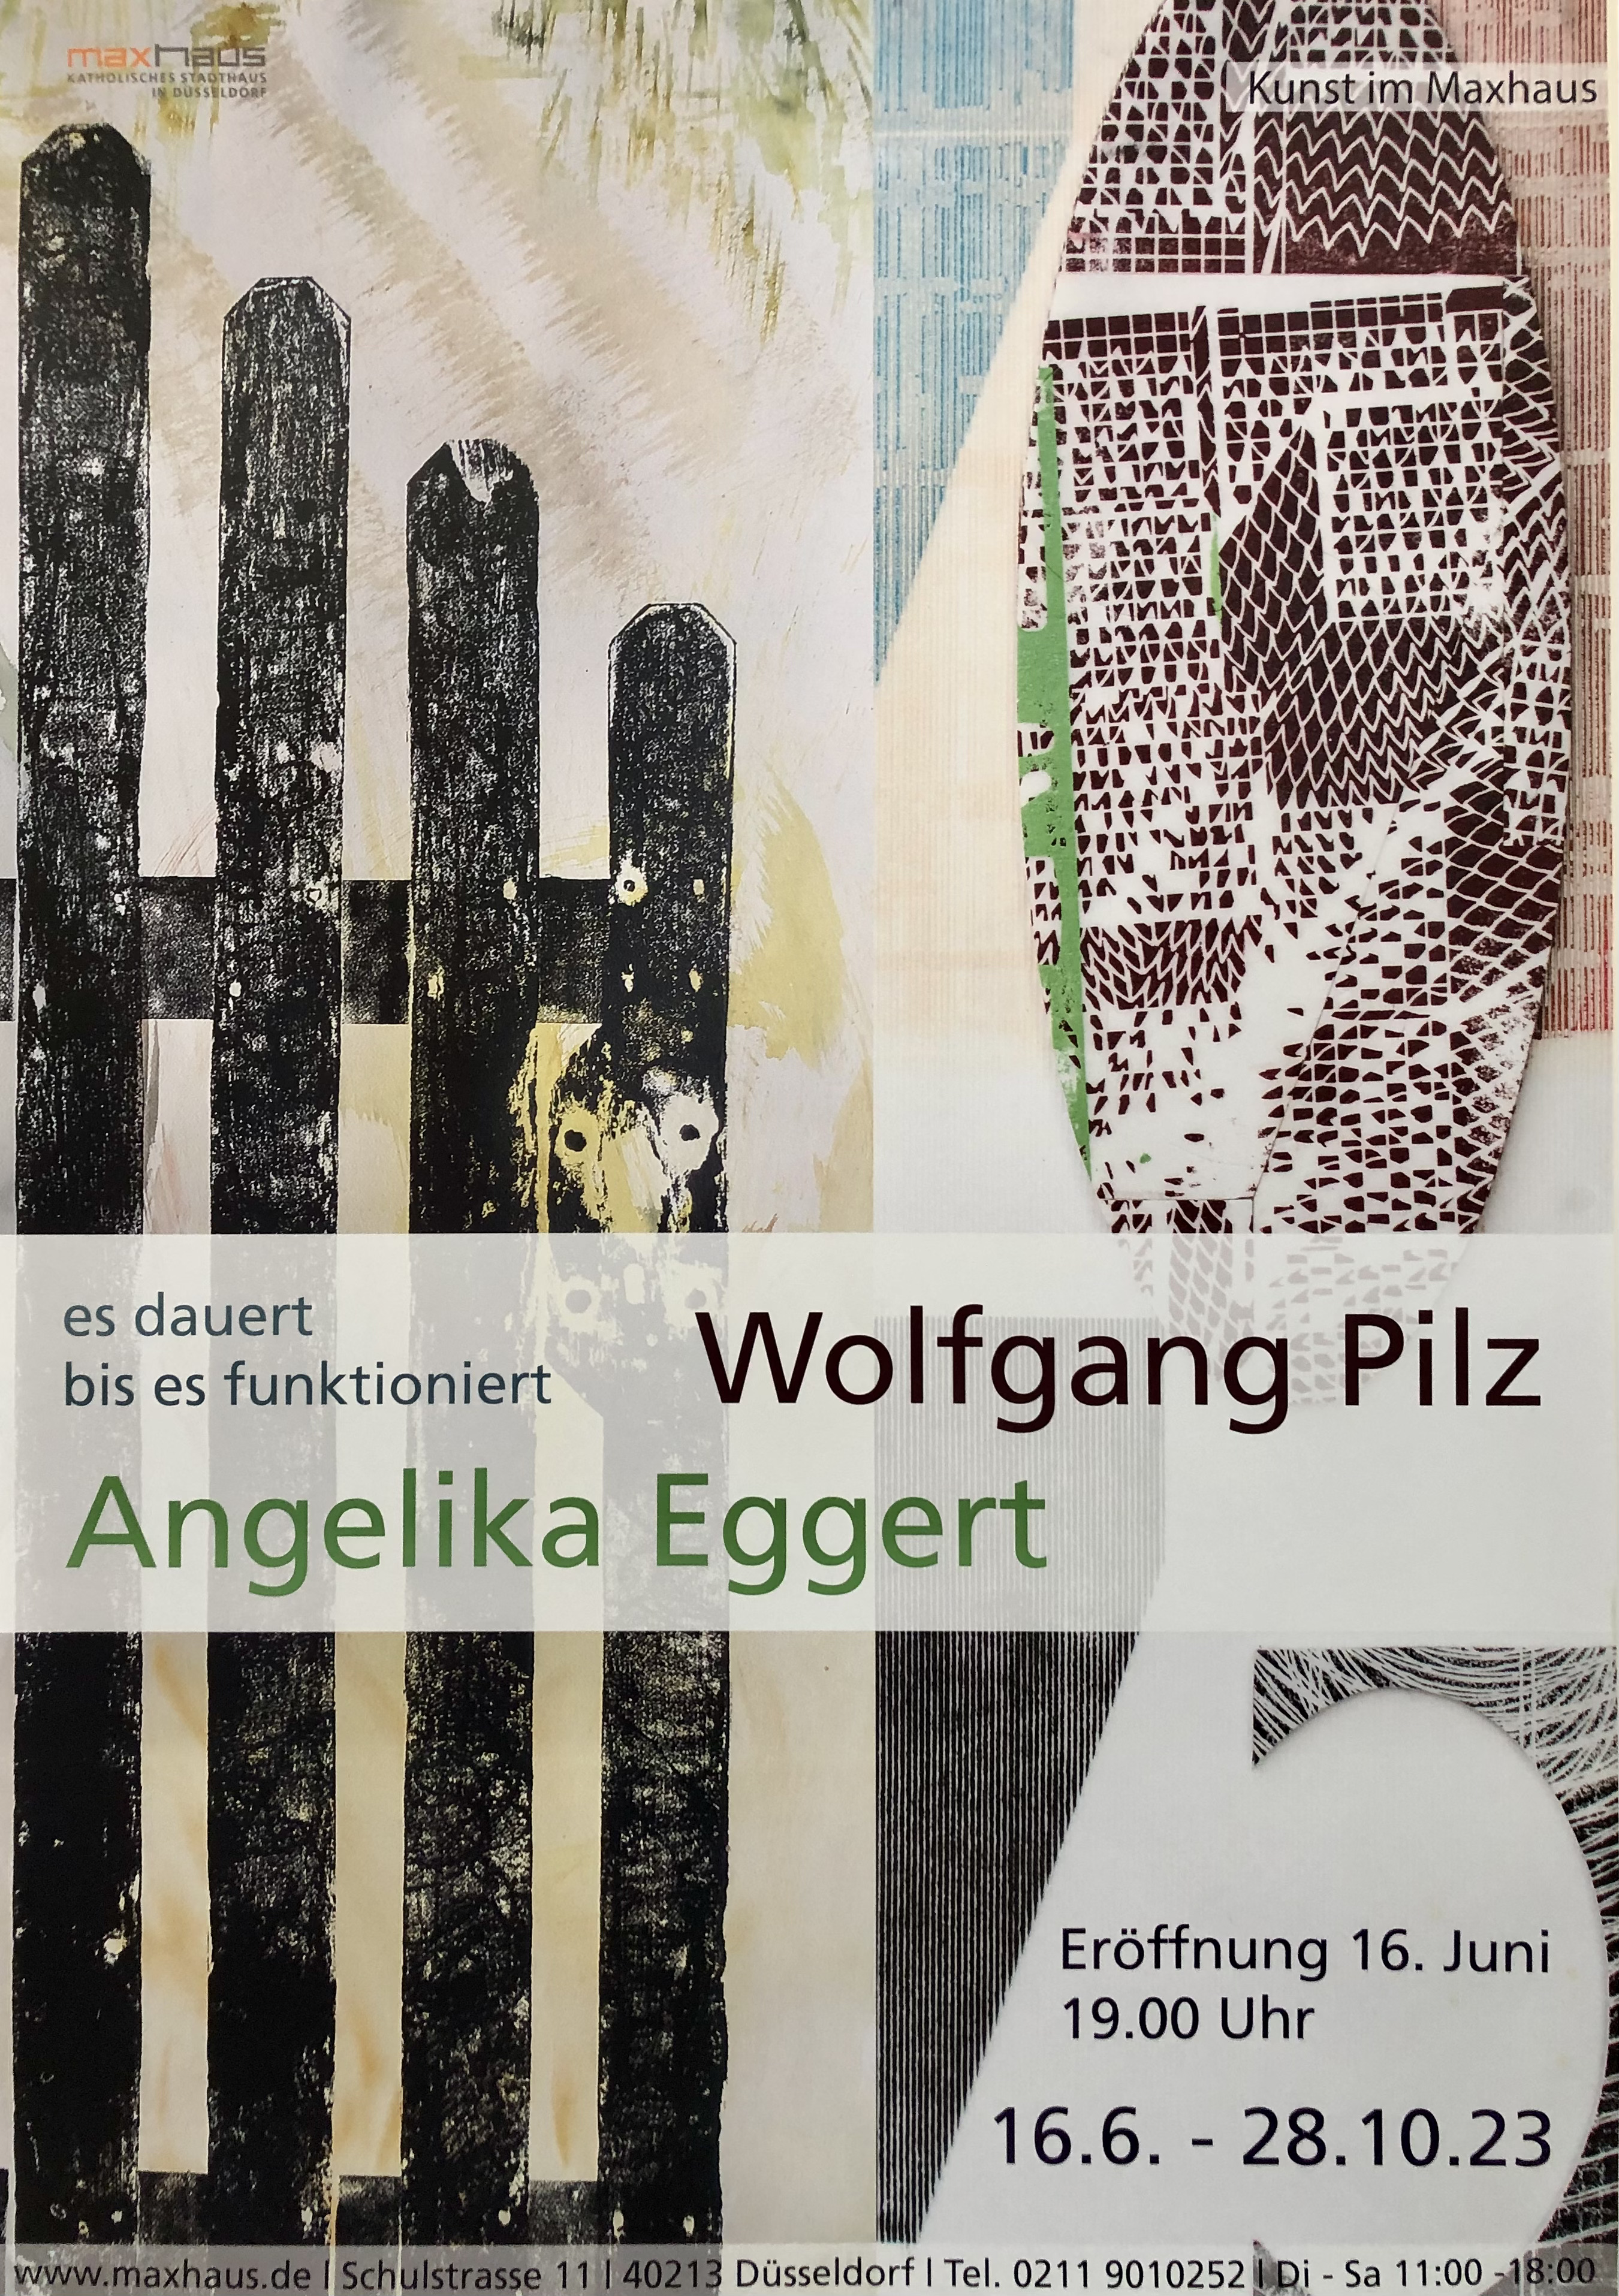 Maxhaus Dsseldorf; Angelika Eggert; Holzschnitt; Ruderalkultur; Urbane Landschaft